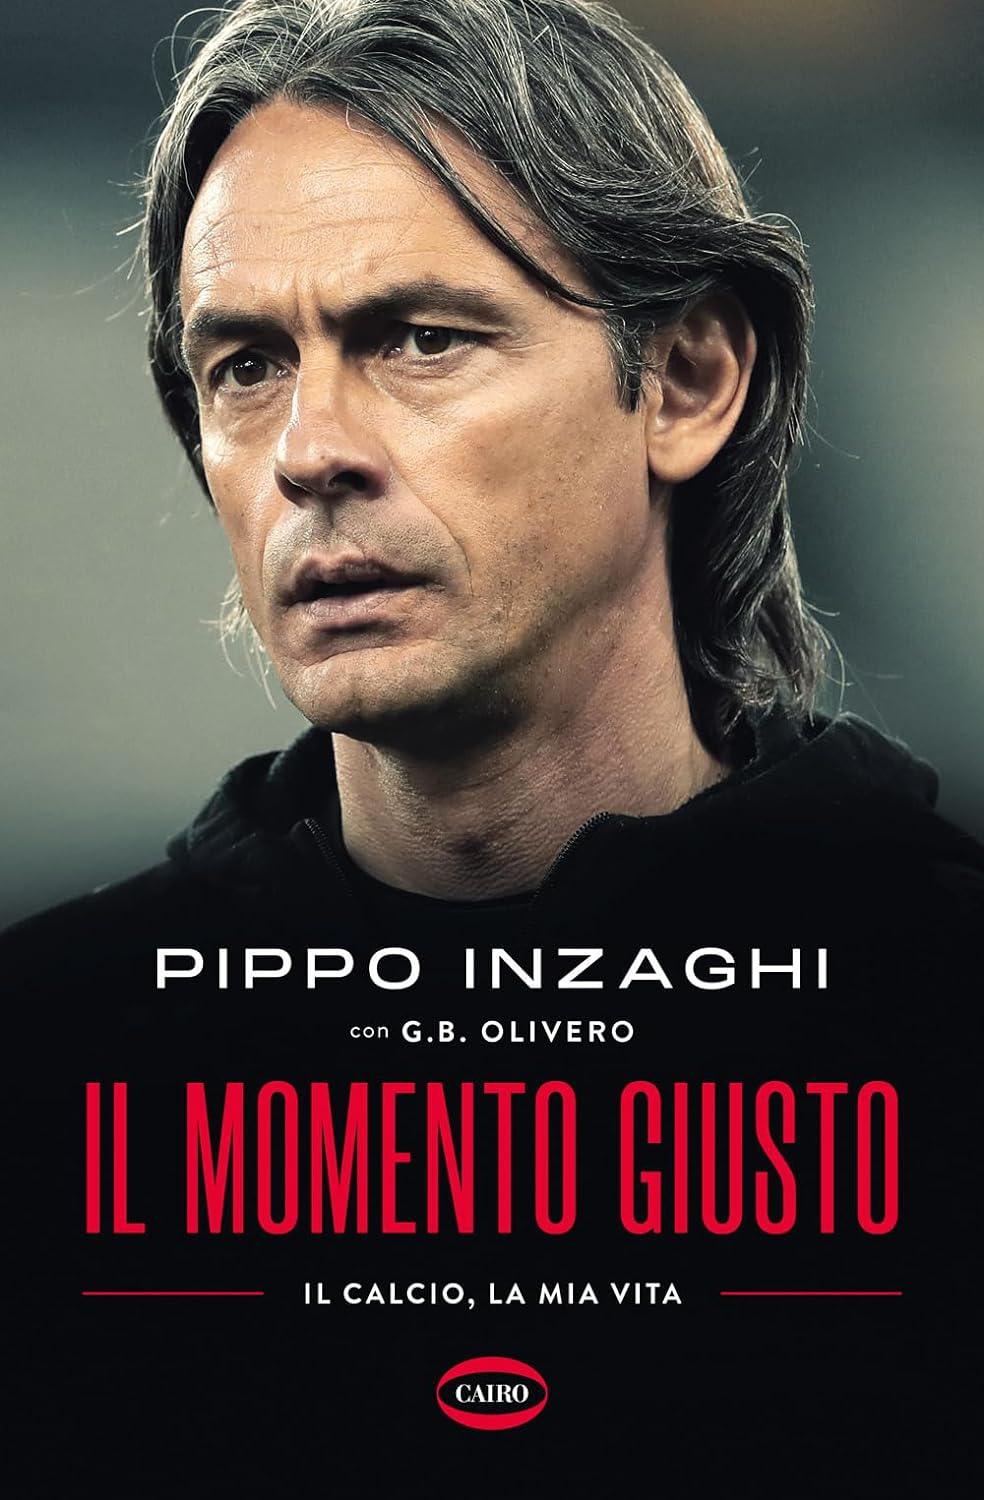 Pippo Inzaghi - Il momento giusto